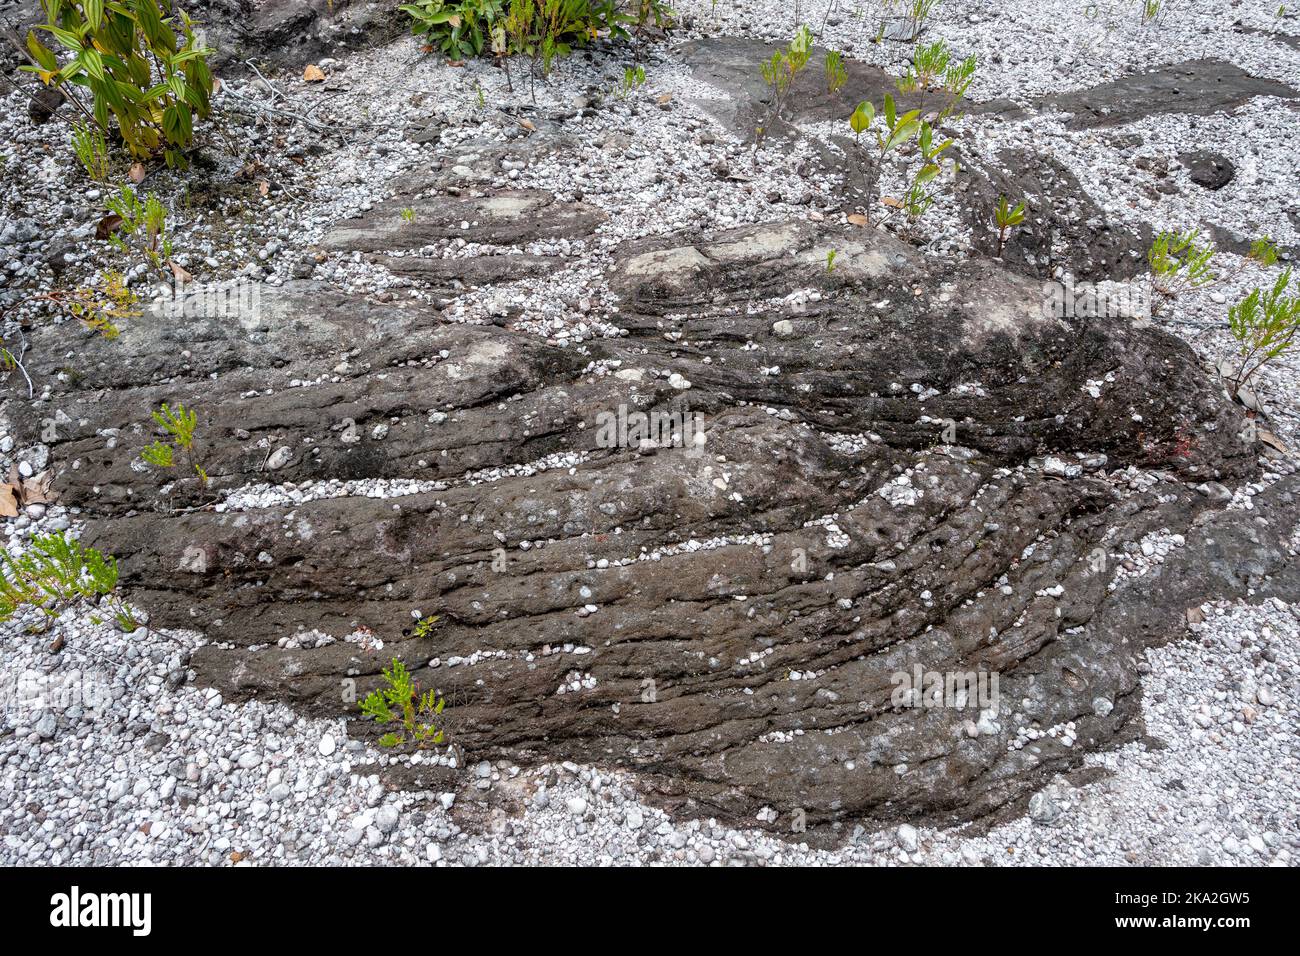 Präkambrische Kieselsteinsandsteine mit Kreuzbetten in den flachen Tepui-Bergen. Tepequém, Bundesstaat Roraima, Brasilien. Stockfoto